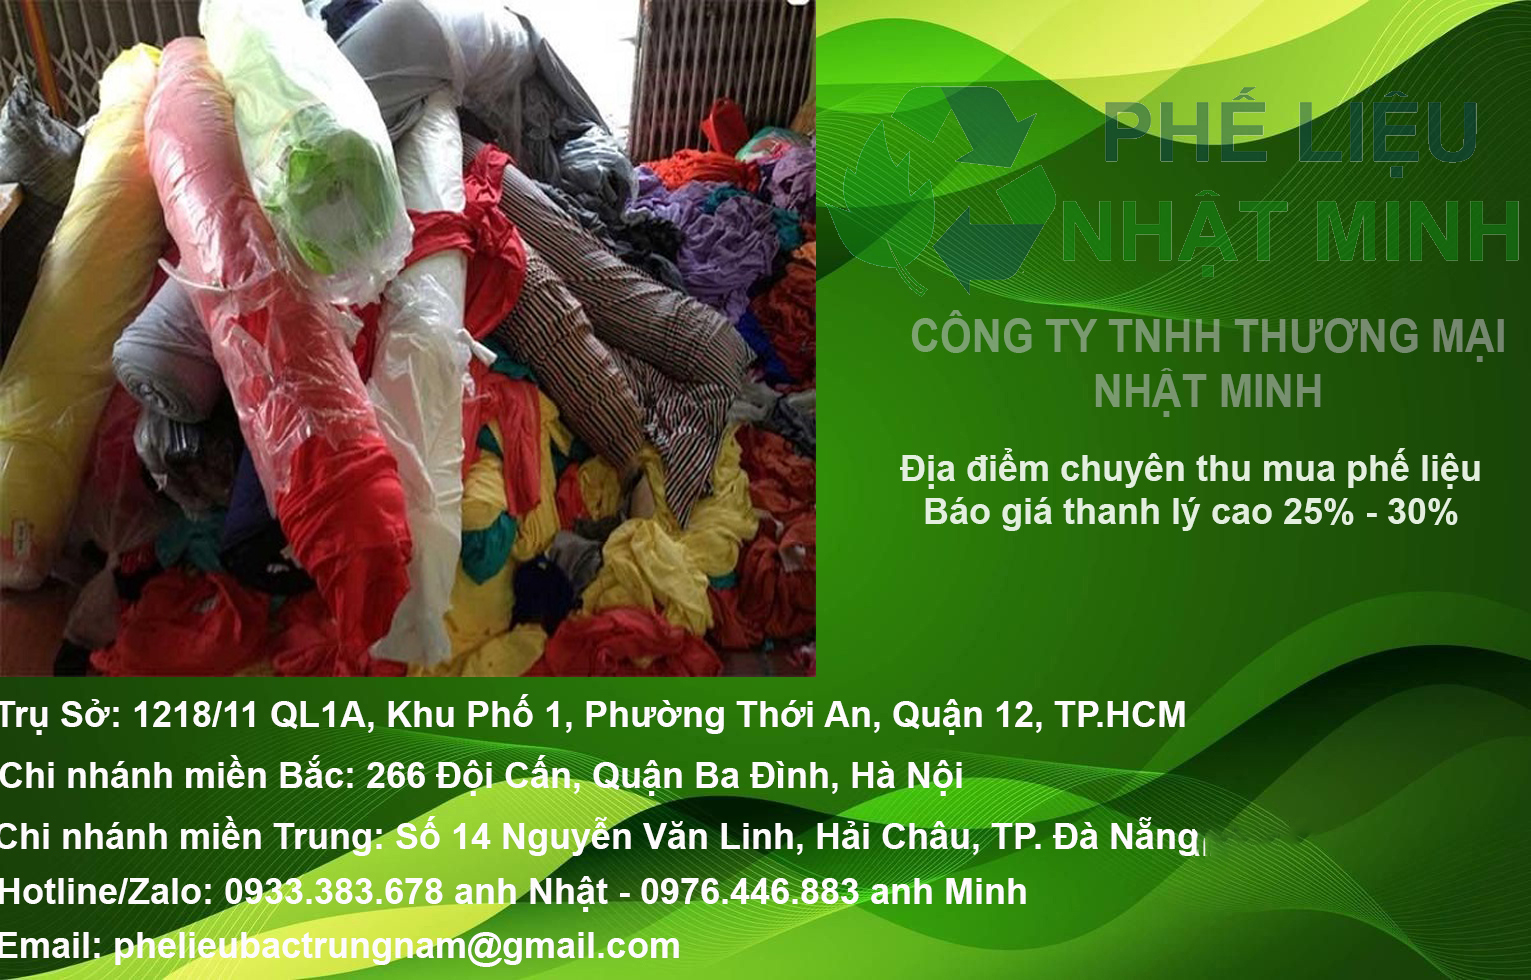 Cơ sở thu mua phế liệu sắt, đồng, nhôm, inox, nhựa KCN Giang Điền